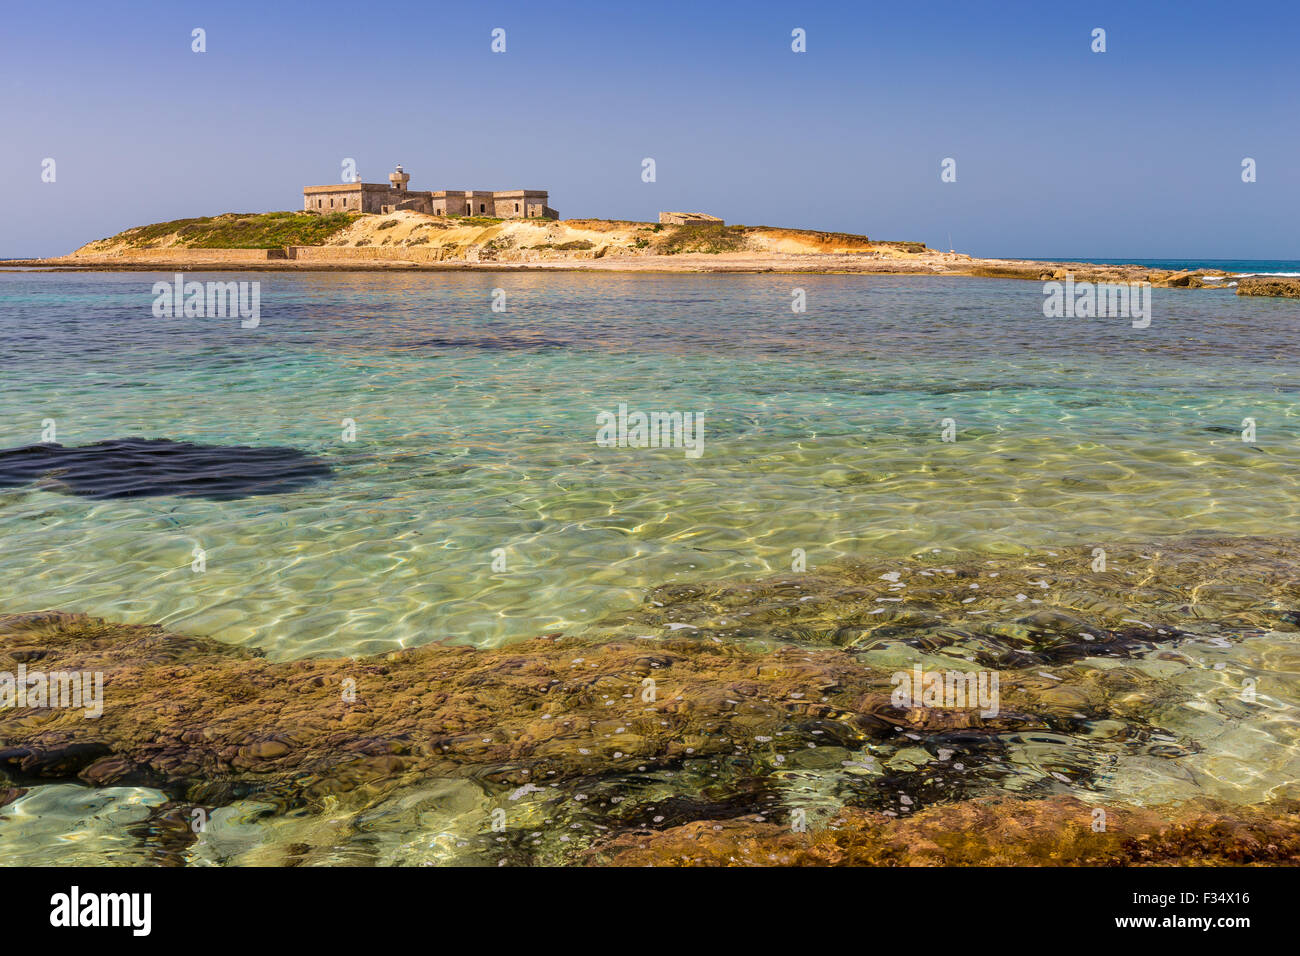 The island of currents. Correnti Island. Isola delle Correnti, Portopalo di Capo Passero, Sicily. Stock Photo